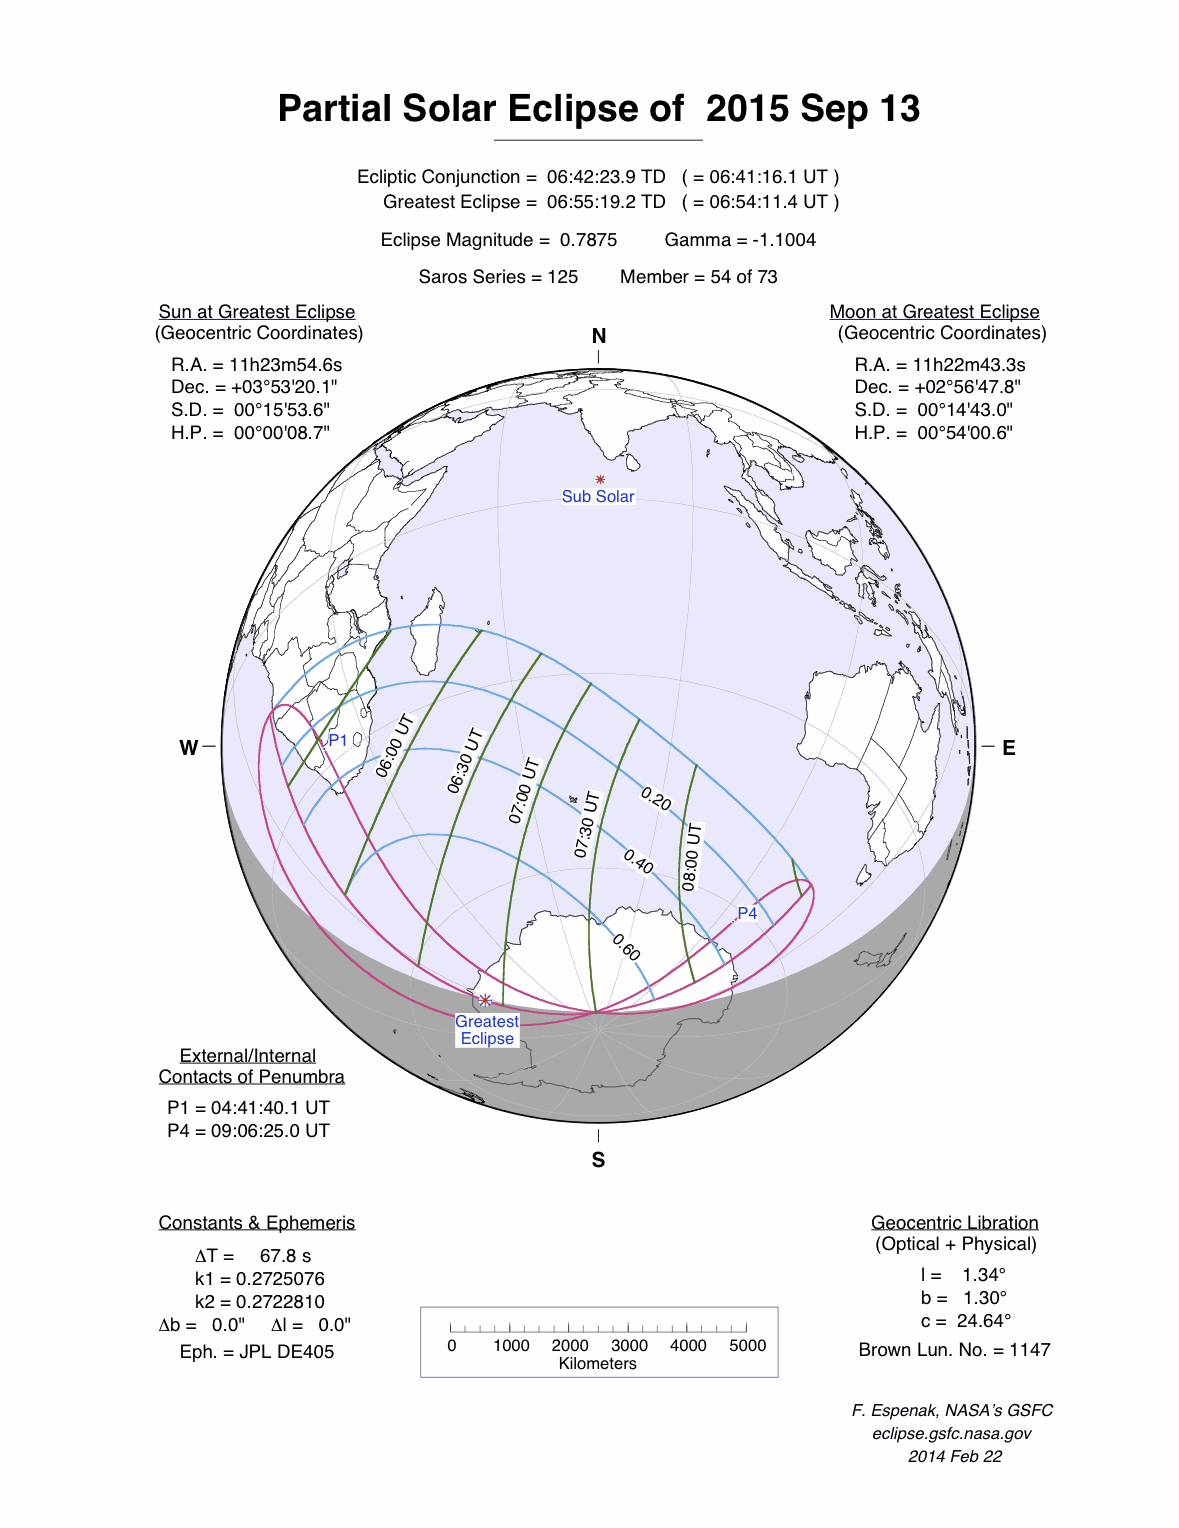 Der Verlauf der partiellen Sonnenfinsternis vom 13. September 2015